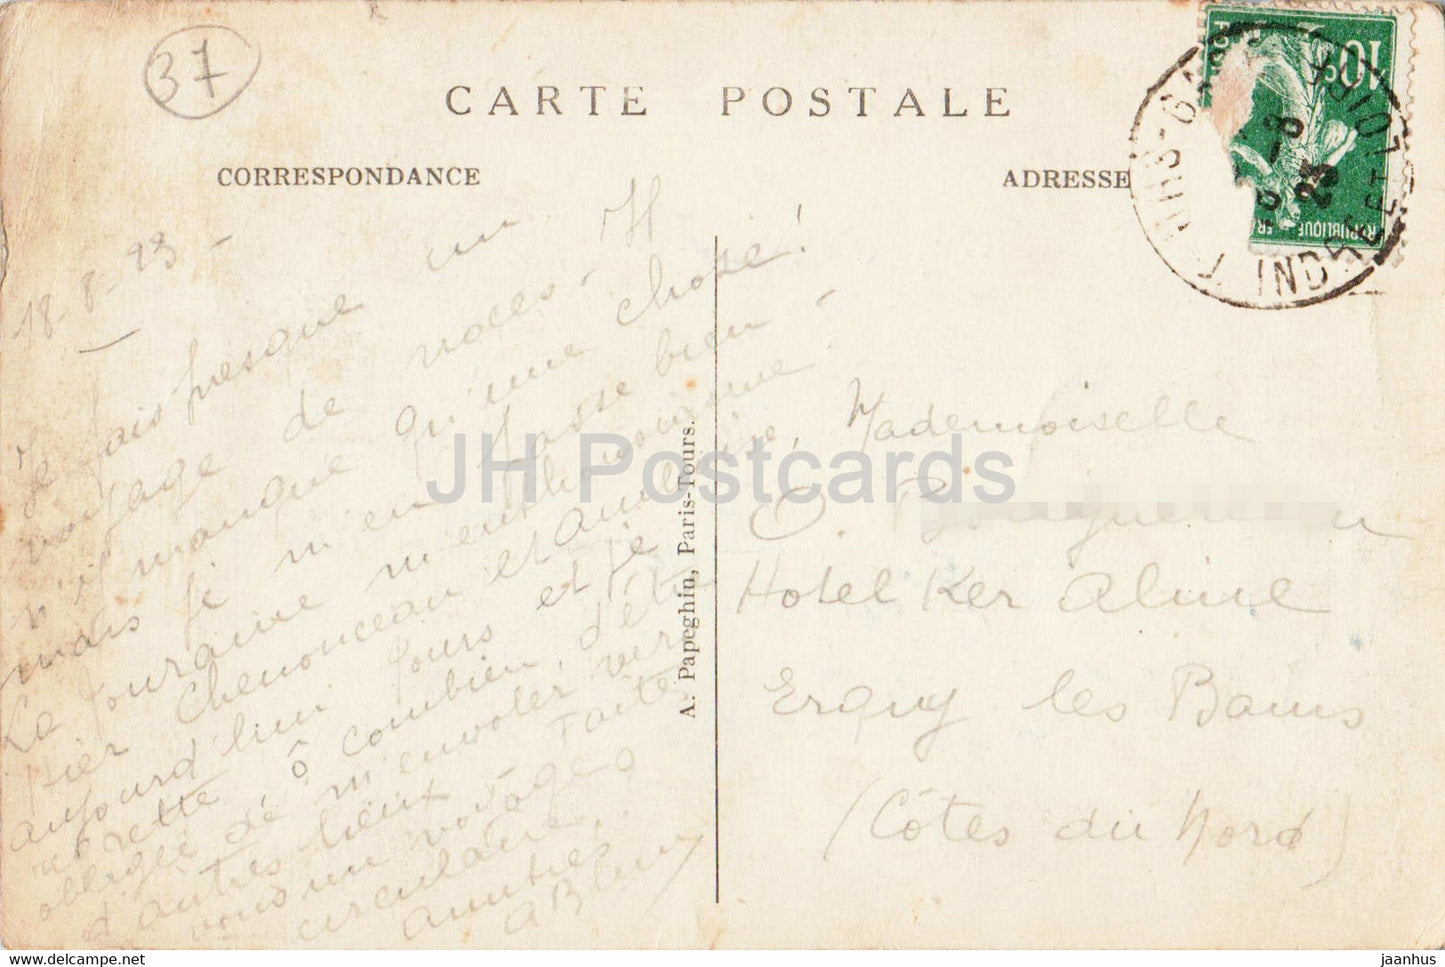 Tours - Vue Générale sur la Loire le Pont de Pierre - La Cathédrale St Gatien - 1 - carte postale ancienne - 1923 - France - utilisé